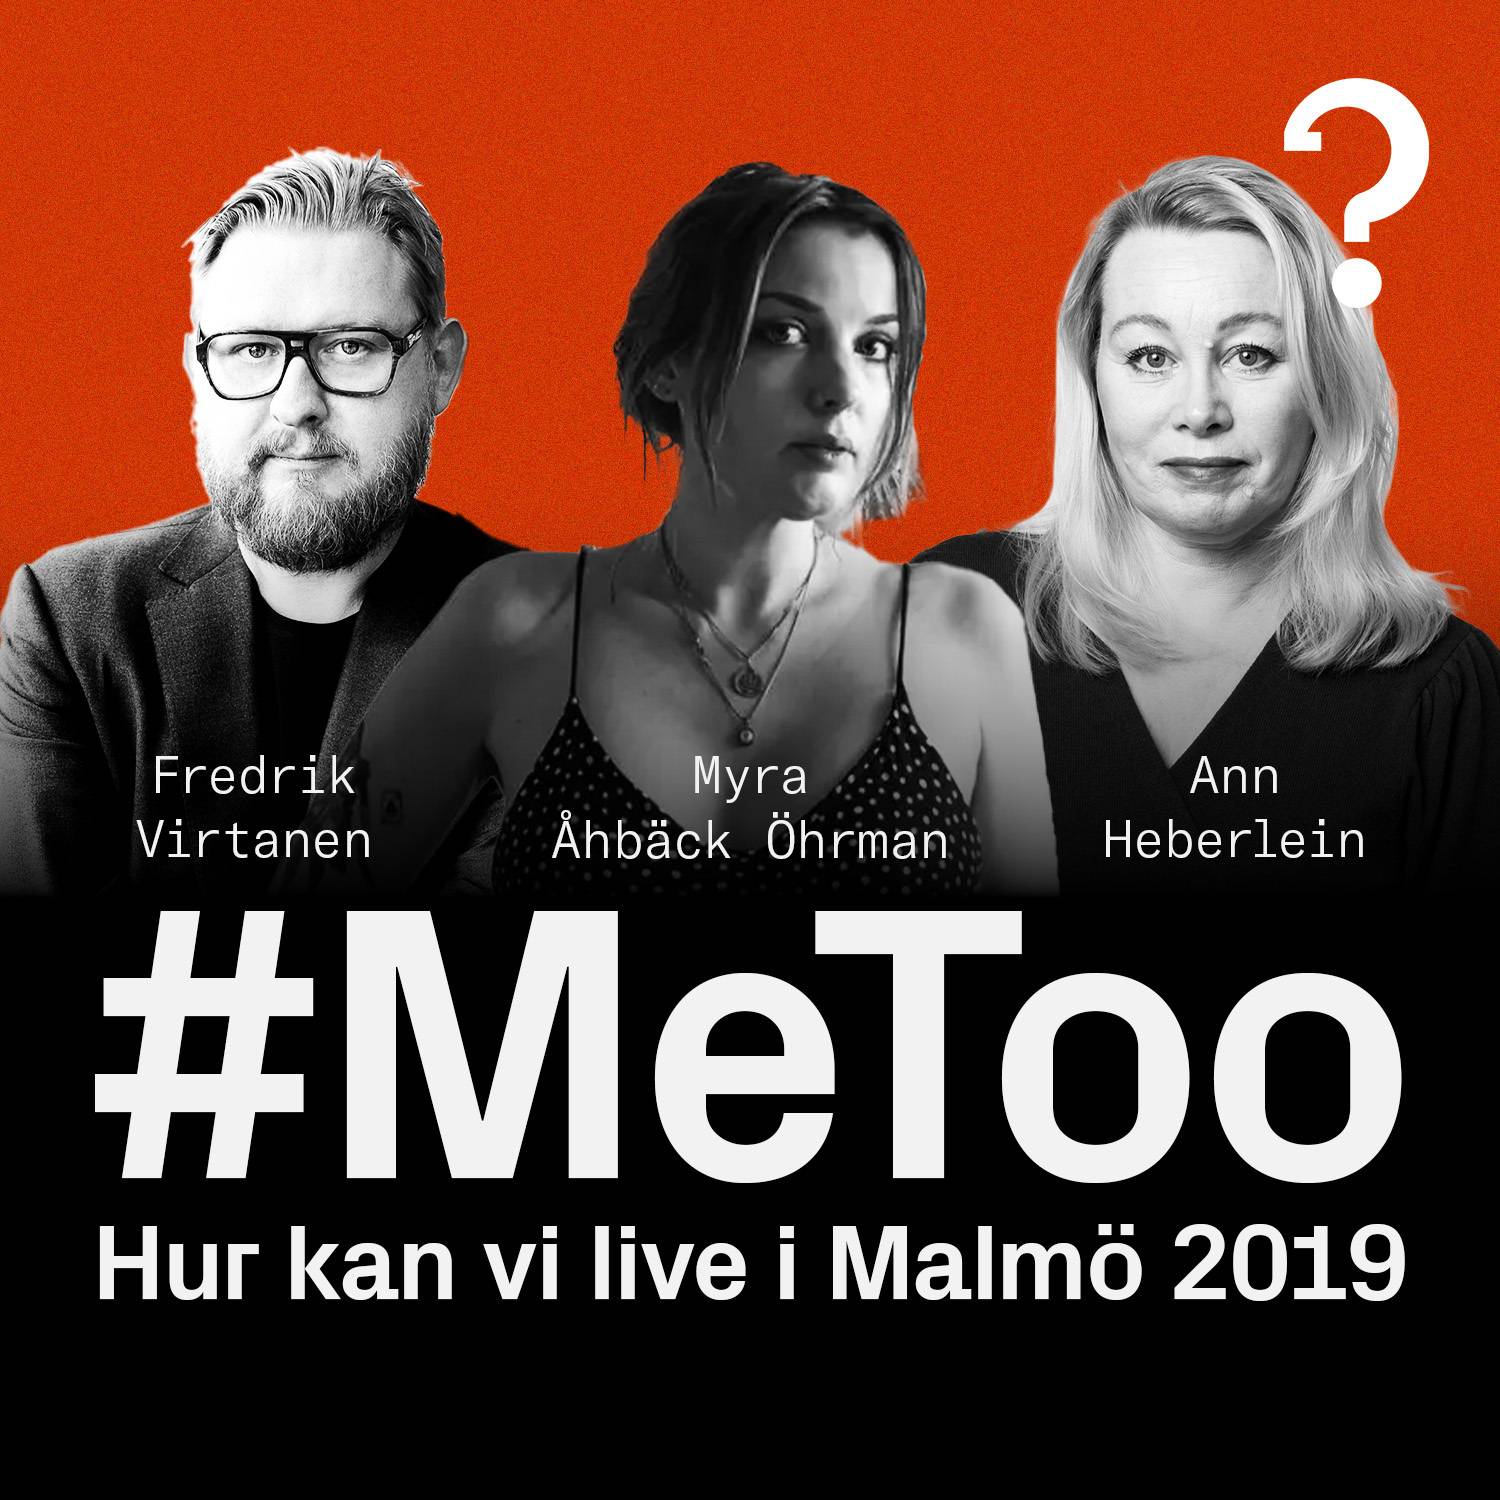 Hur kan vi Live i Malmö 2019 – Vad hände efter #metoo?